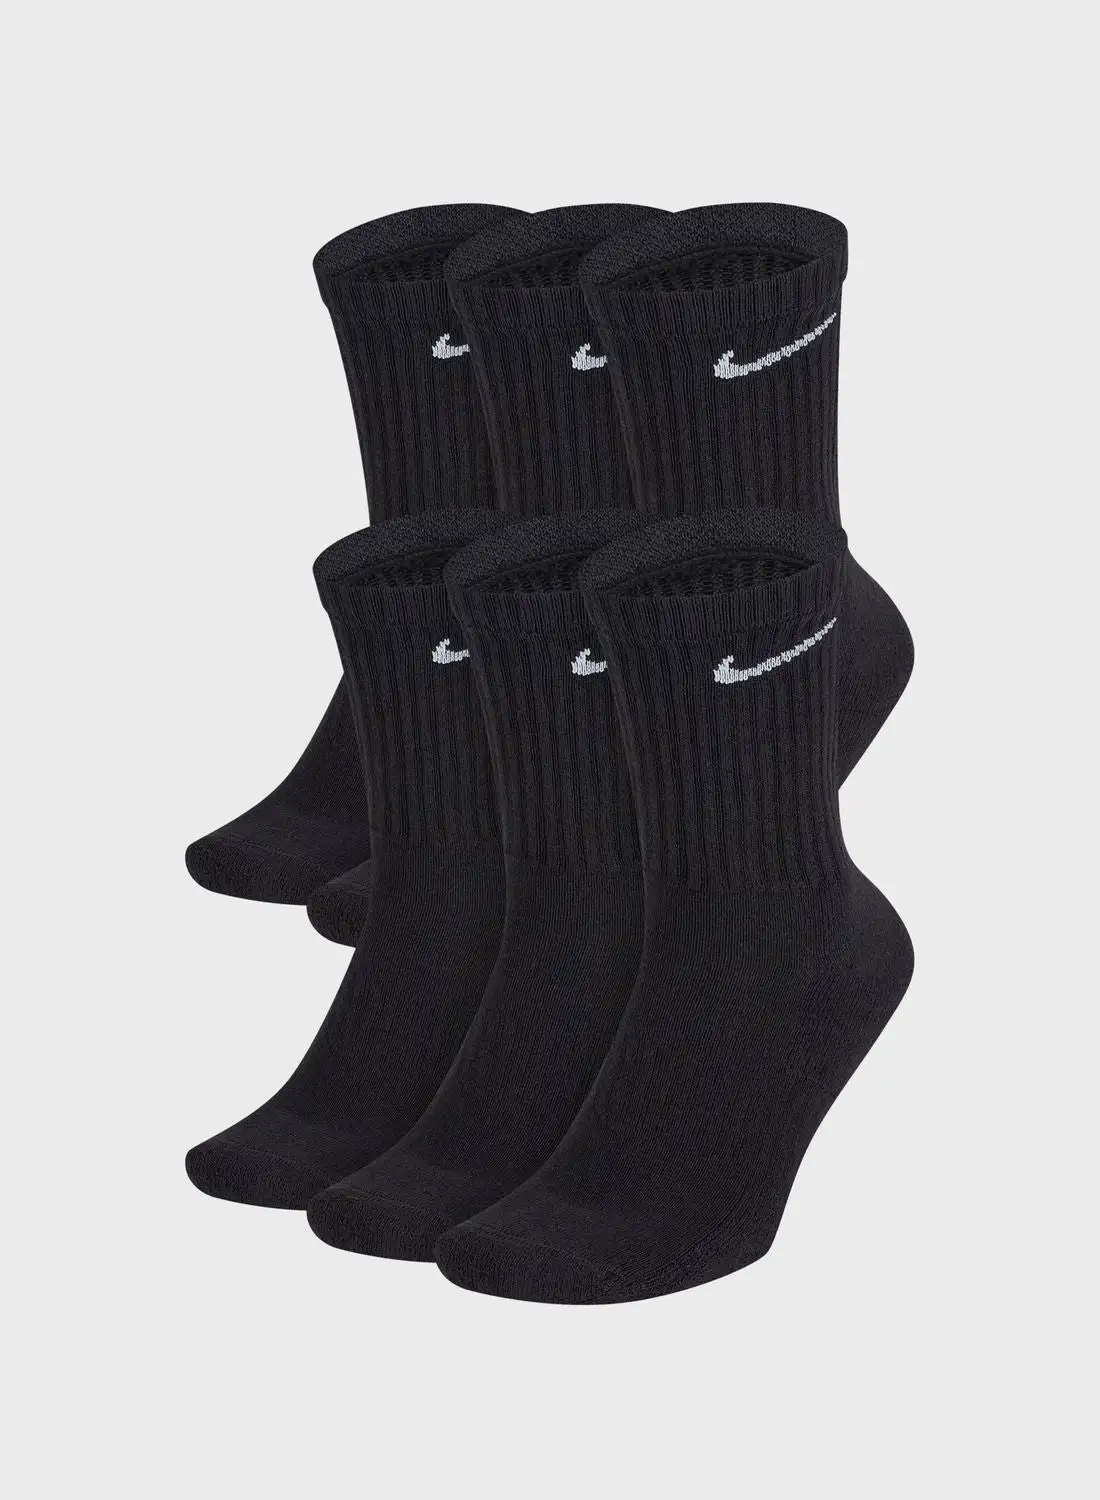 Nike 6 Pack Cushion Crew Socks